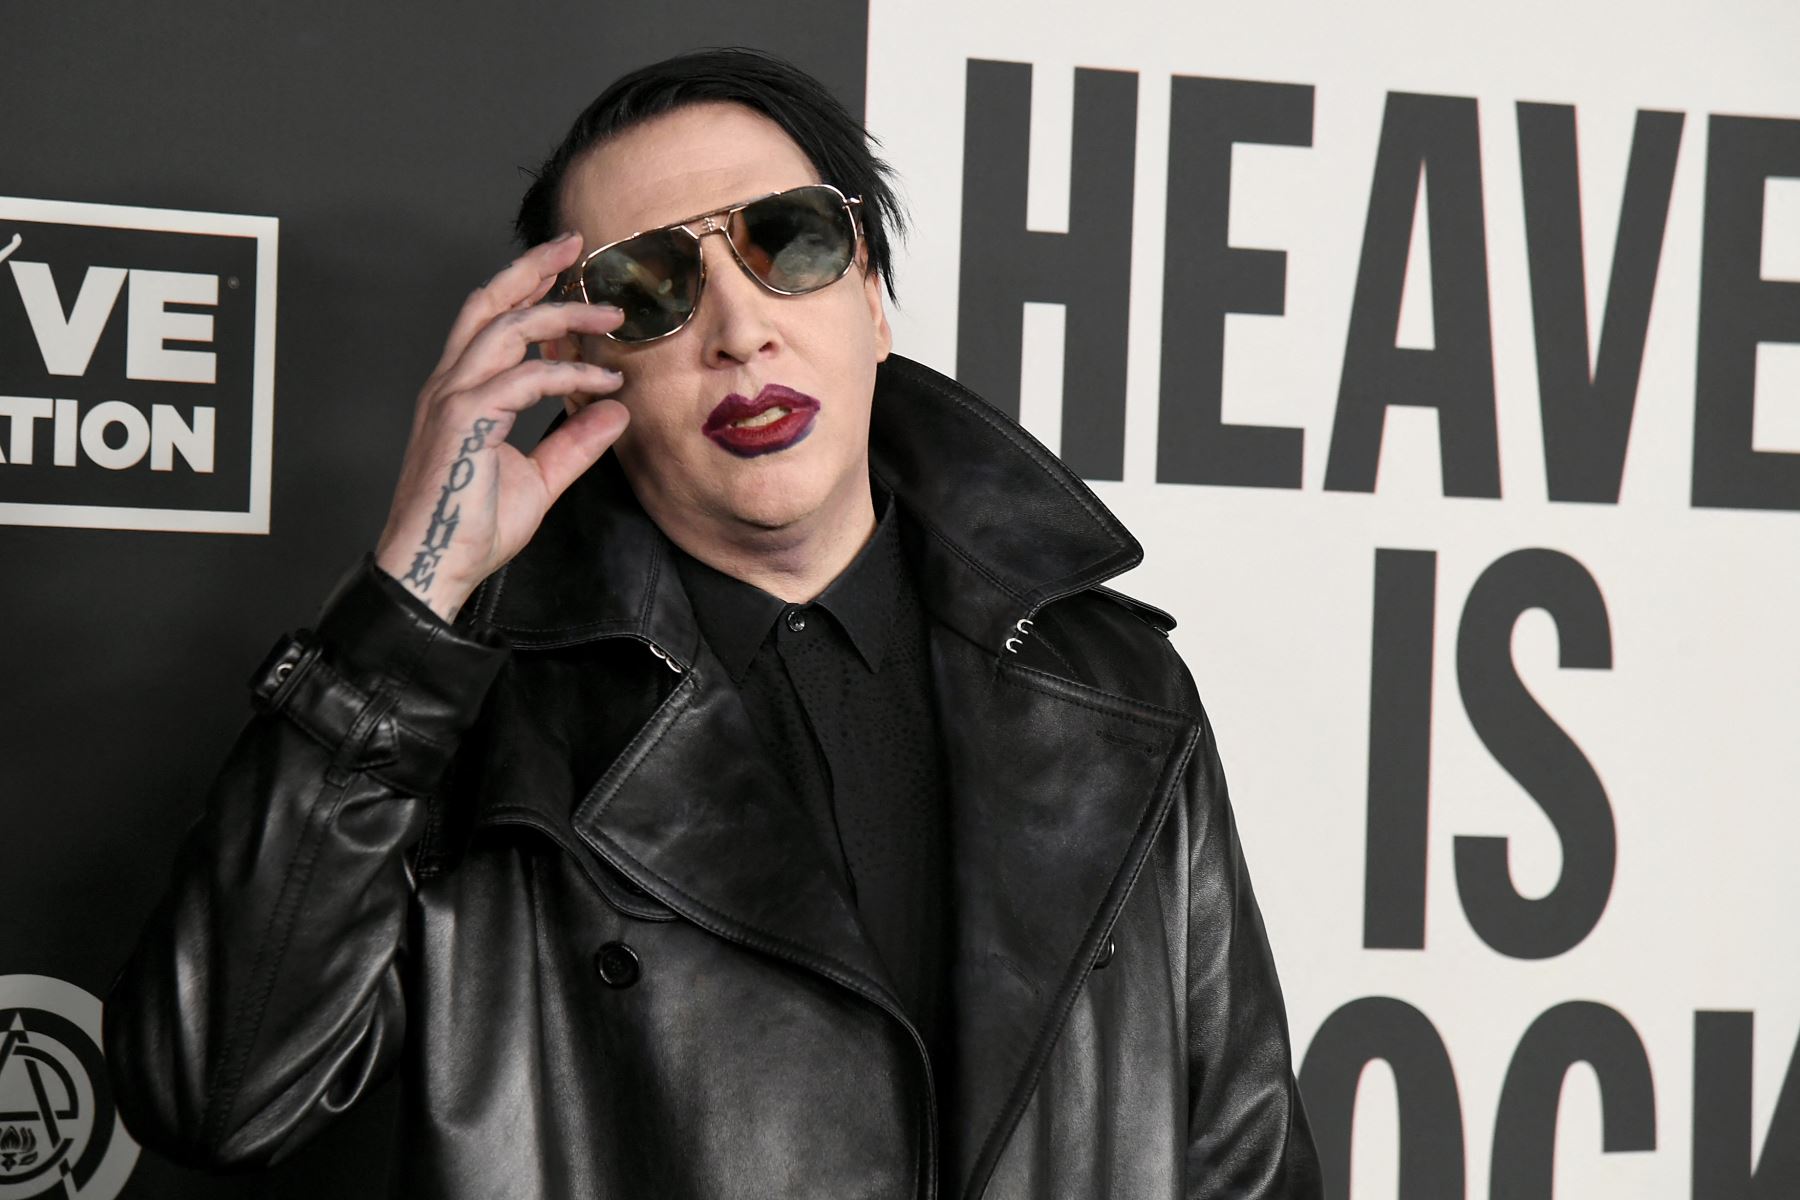 La denuncia contra Brian Warner, cuyo nombre artístico es Marilyn Manson, alcanza a los sellos discográficos del artista. Foto: AFP